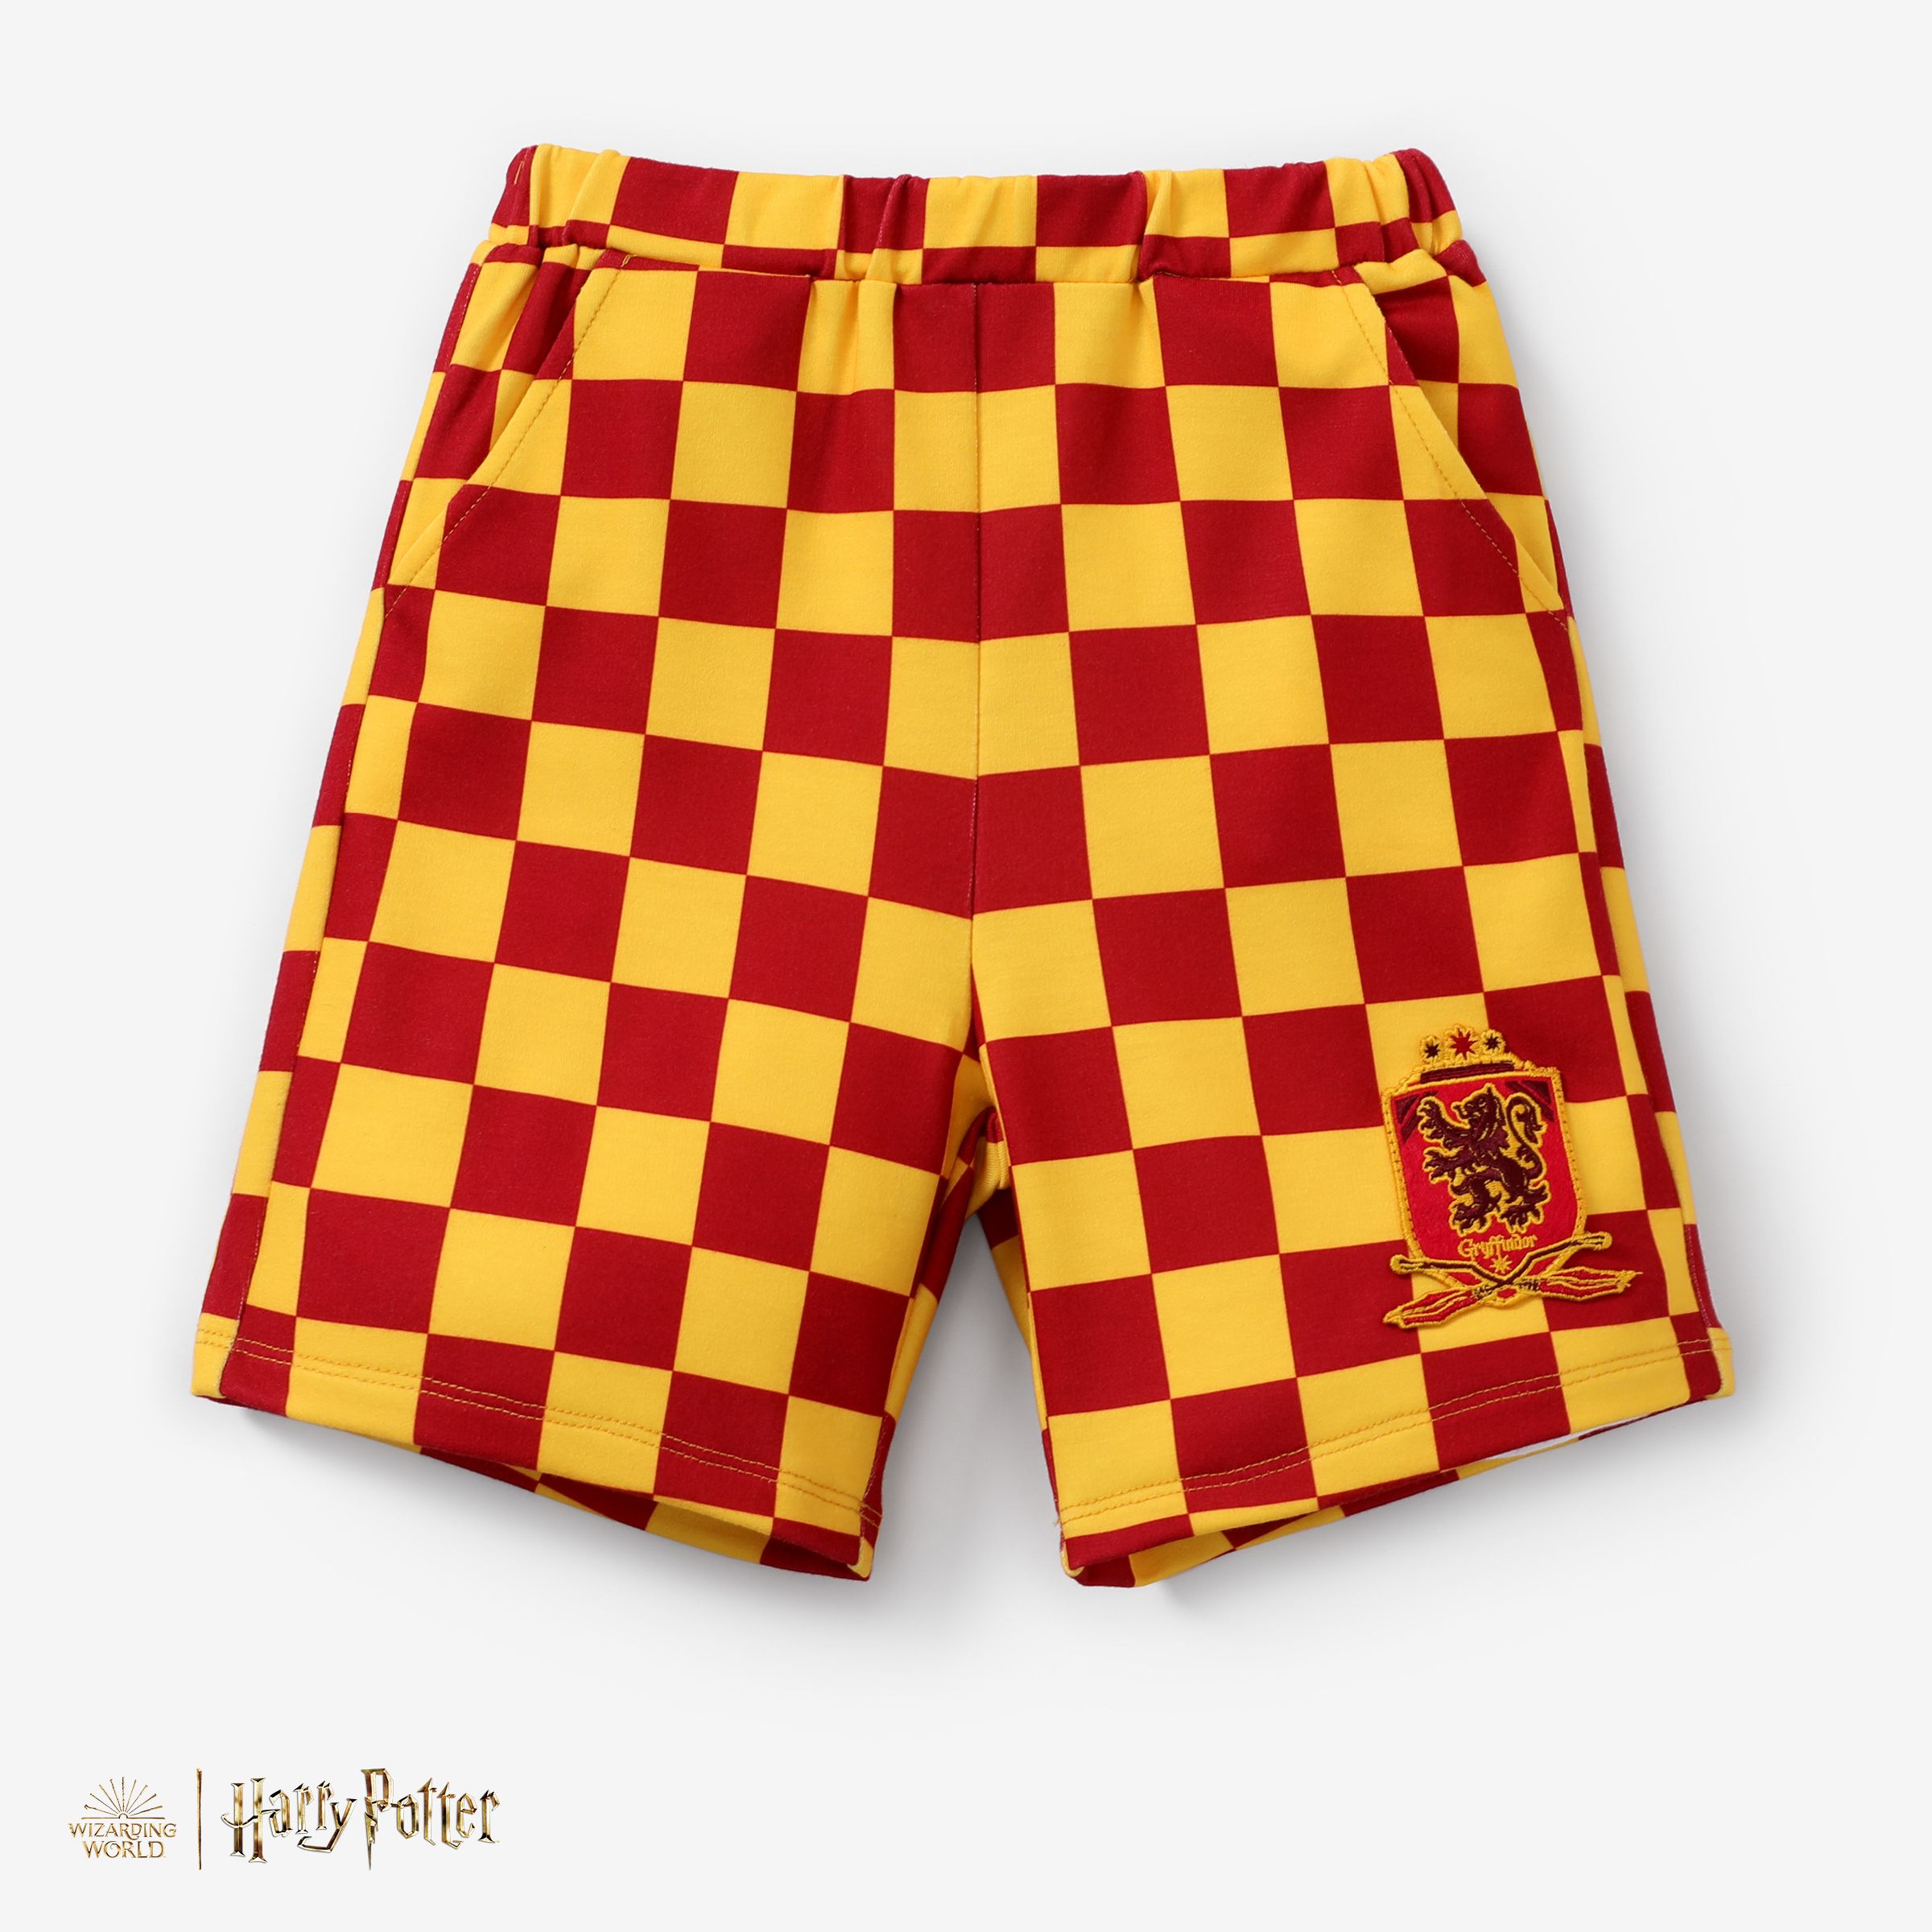 Harry Potter Enfant En Bas âge/enfant Garçon 1pc Grille D’échecs Motif Preppy Style Polo Ou Shorts